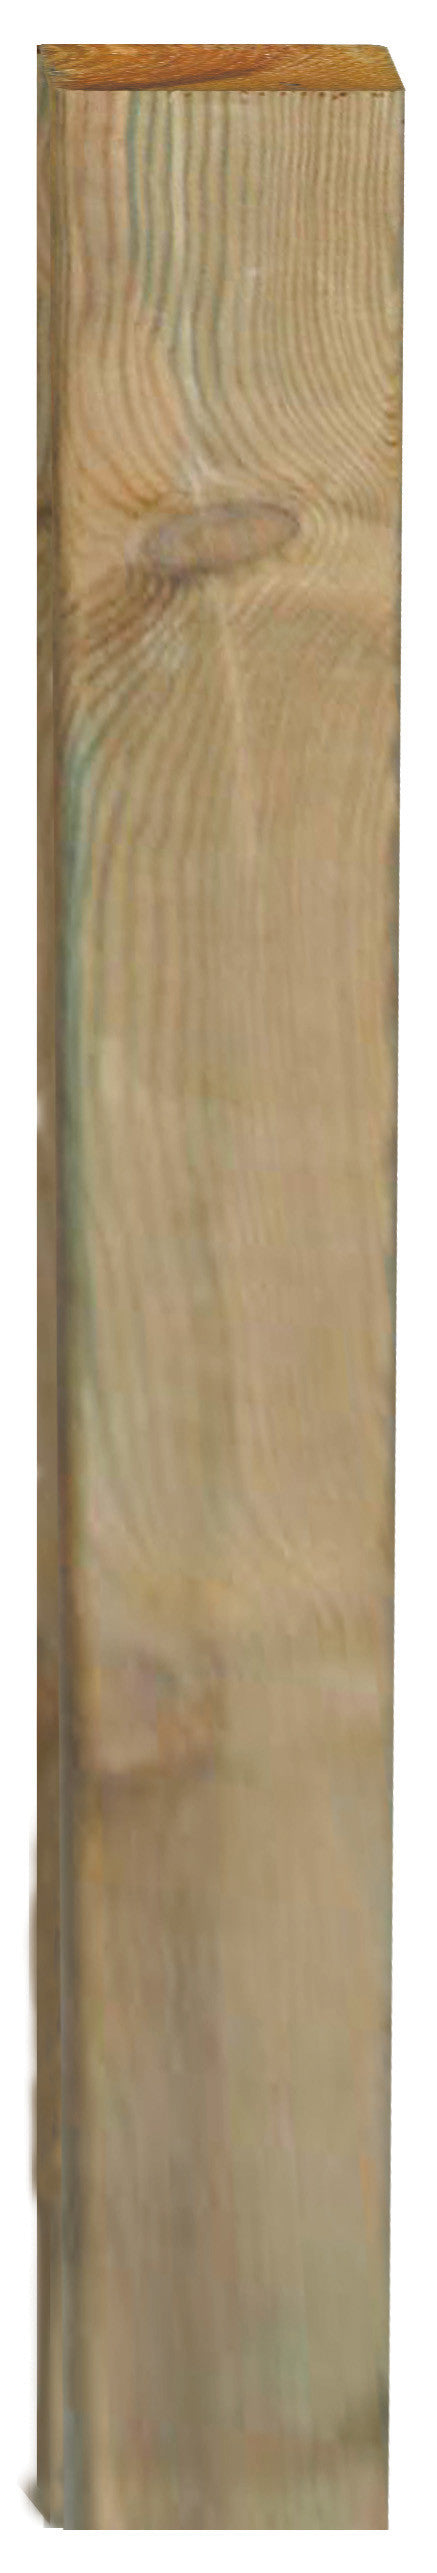 Palo pino essicc. impregnato cm 3,5x7,0x180h